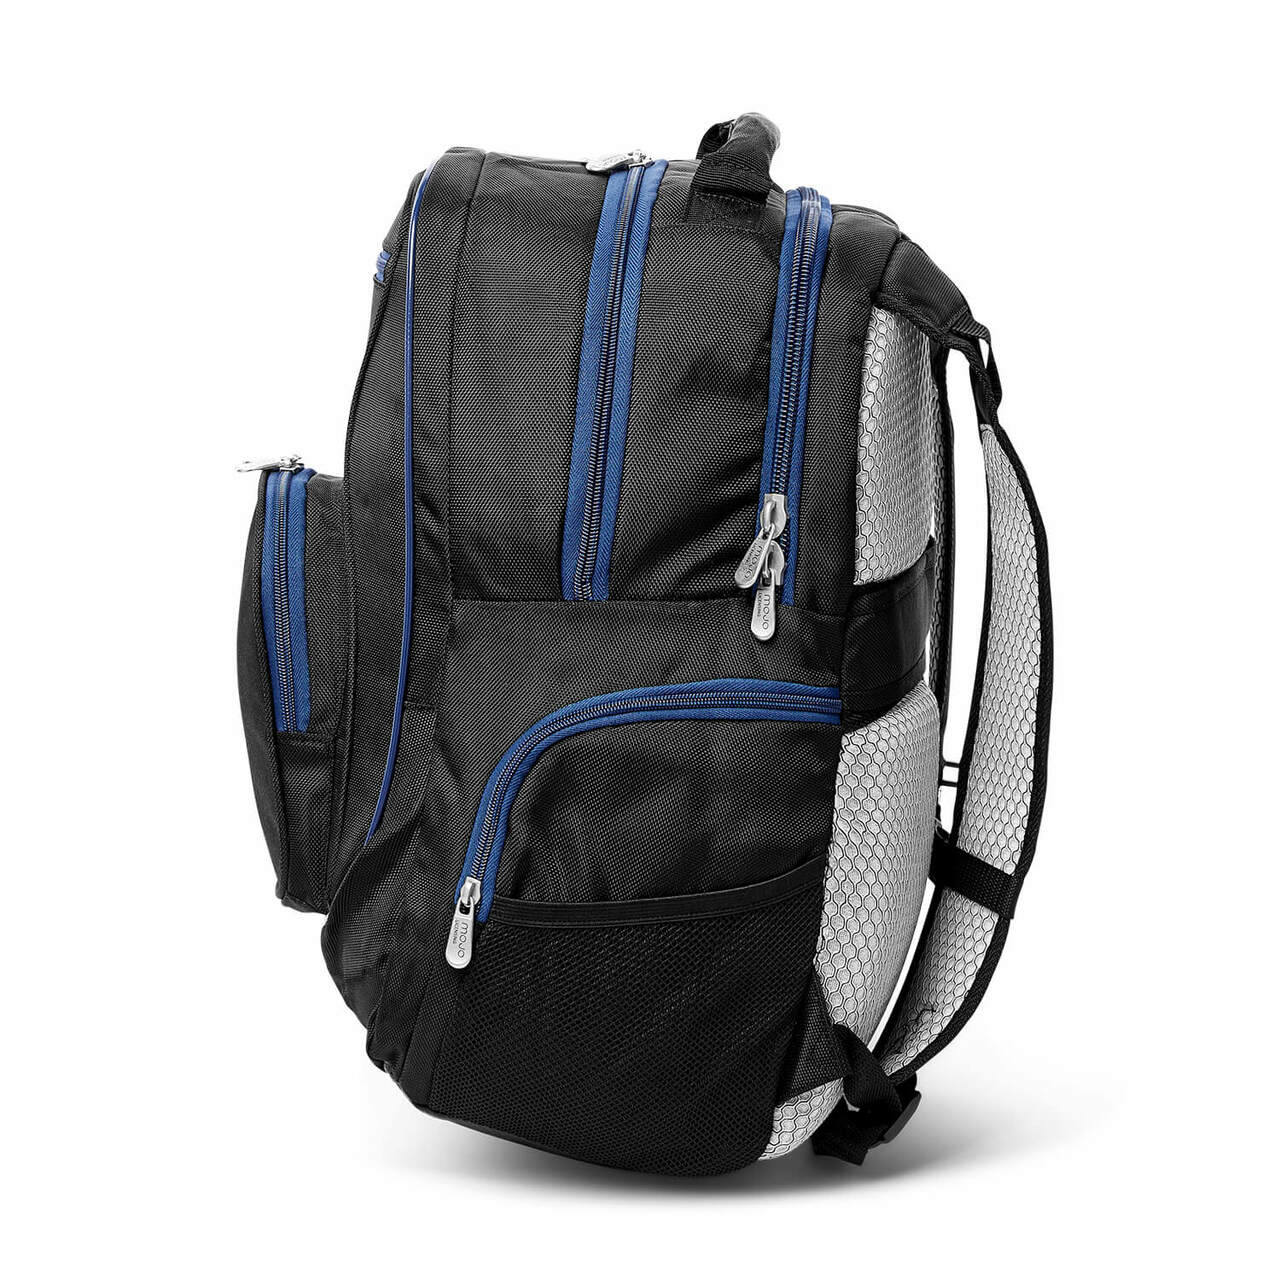 Broncos Backpack | Denver Broncos Laptop Backpack